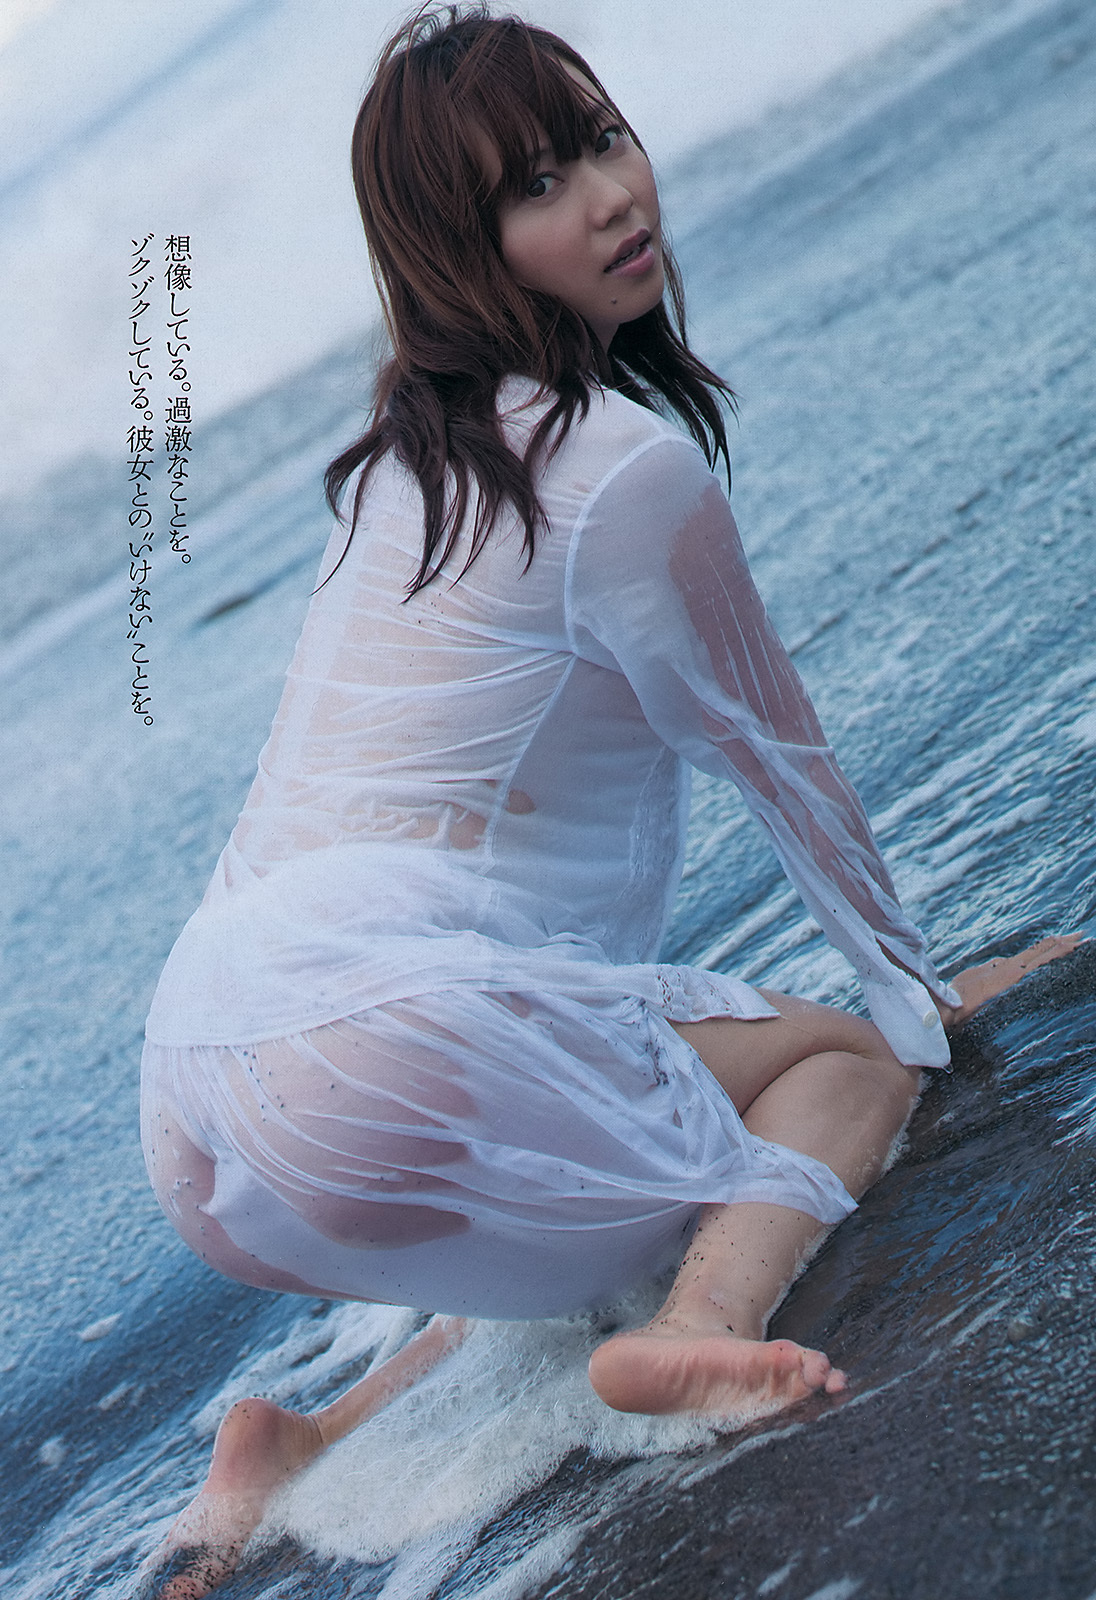 [Weekly Playboy]No.41 SKE48模特女孩市川美织高见奈央长崎真友子铃木友菜池田裕子